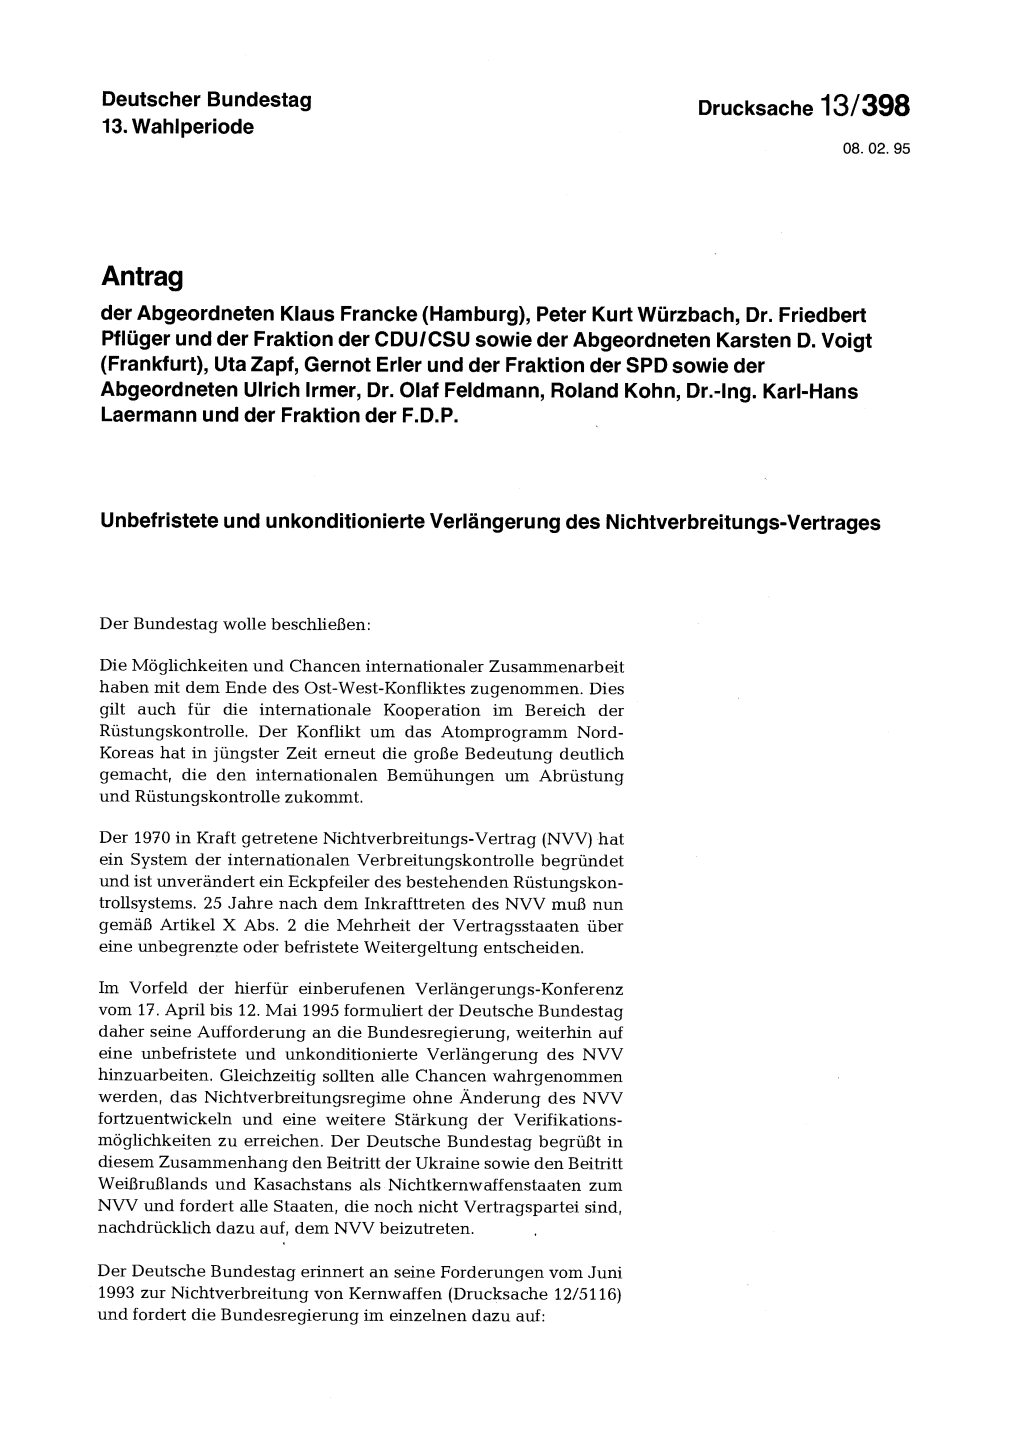 Antrag Der Abgeordneten Klaus Francke (Hamburg), Peter Kurt Würzbach, Dr